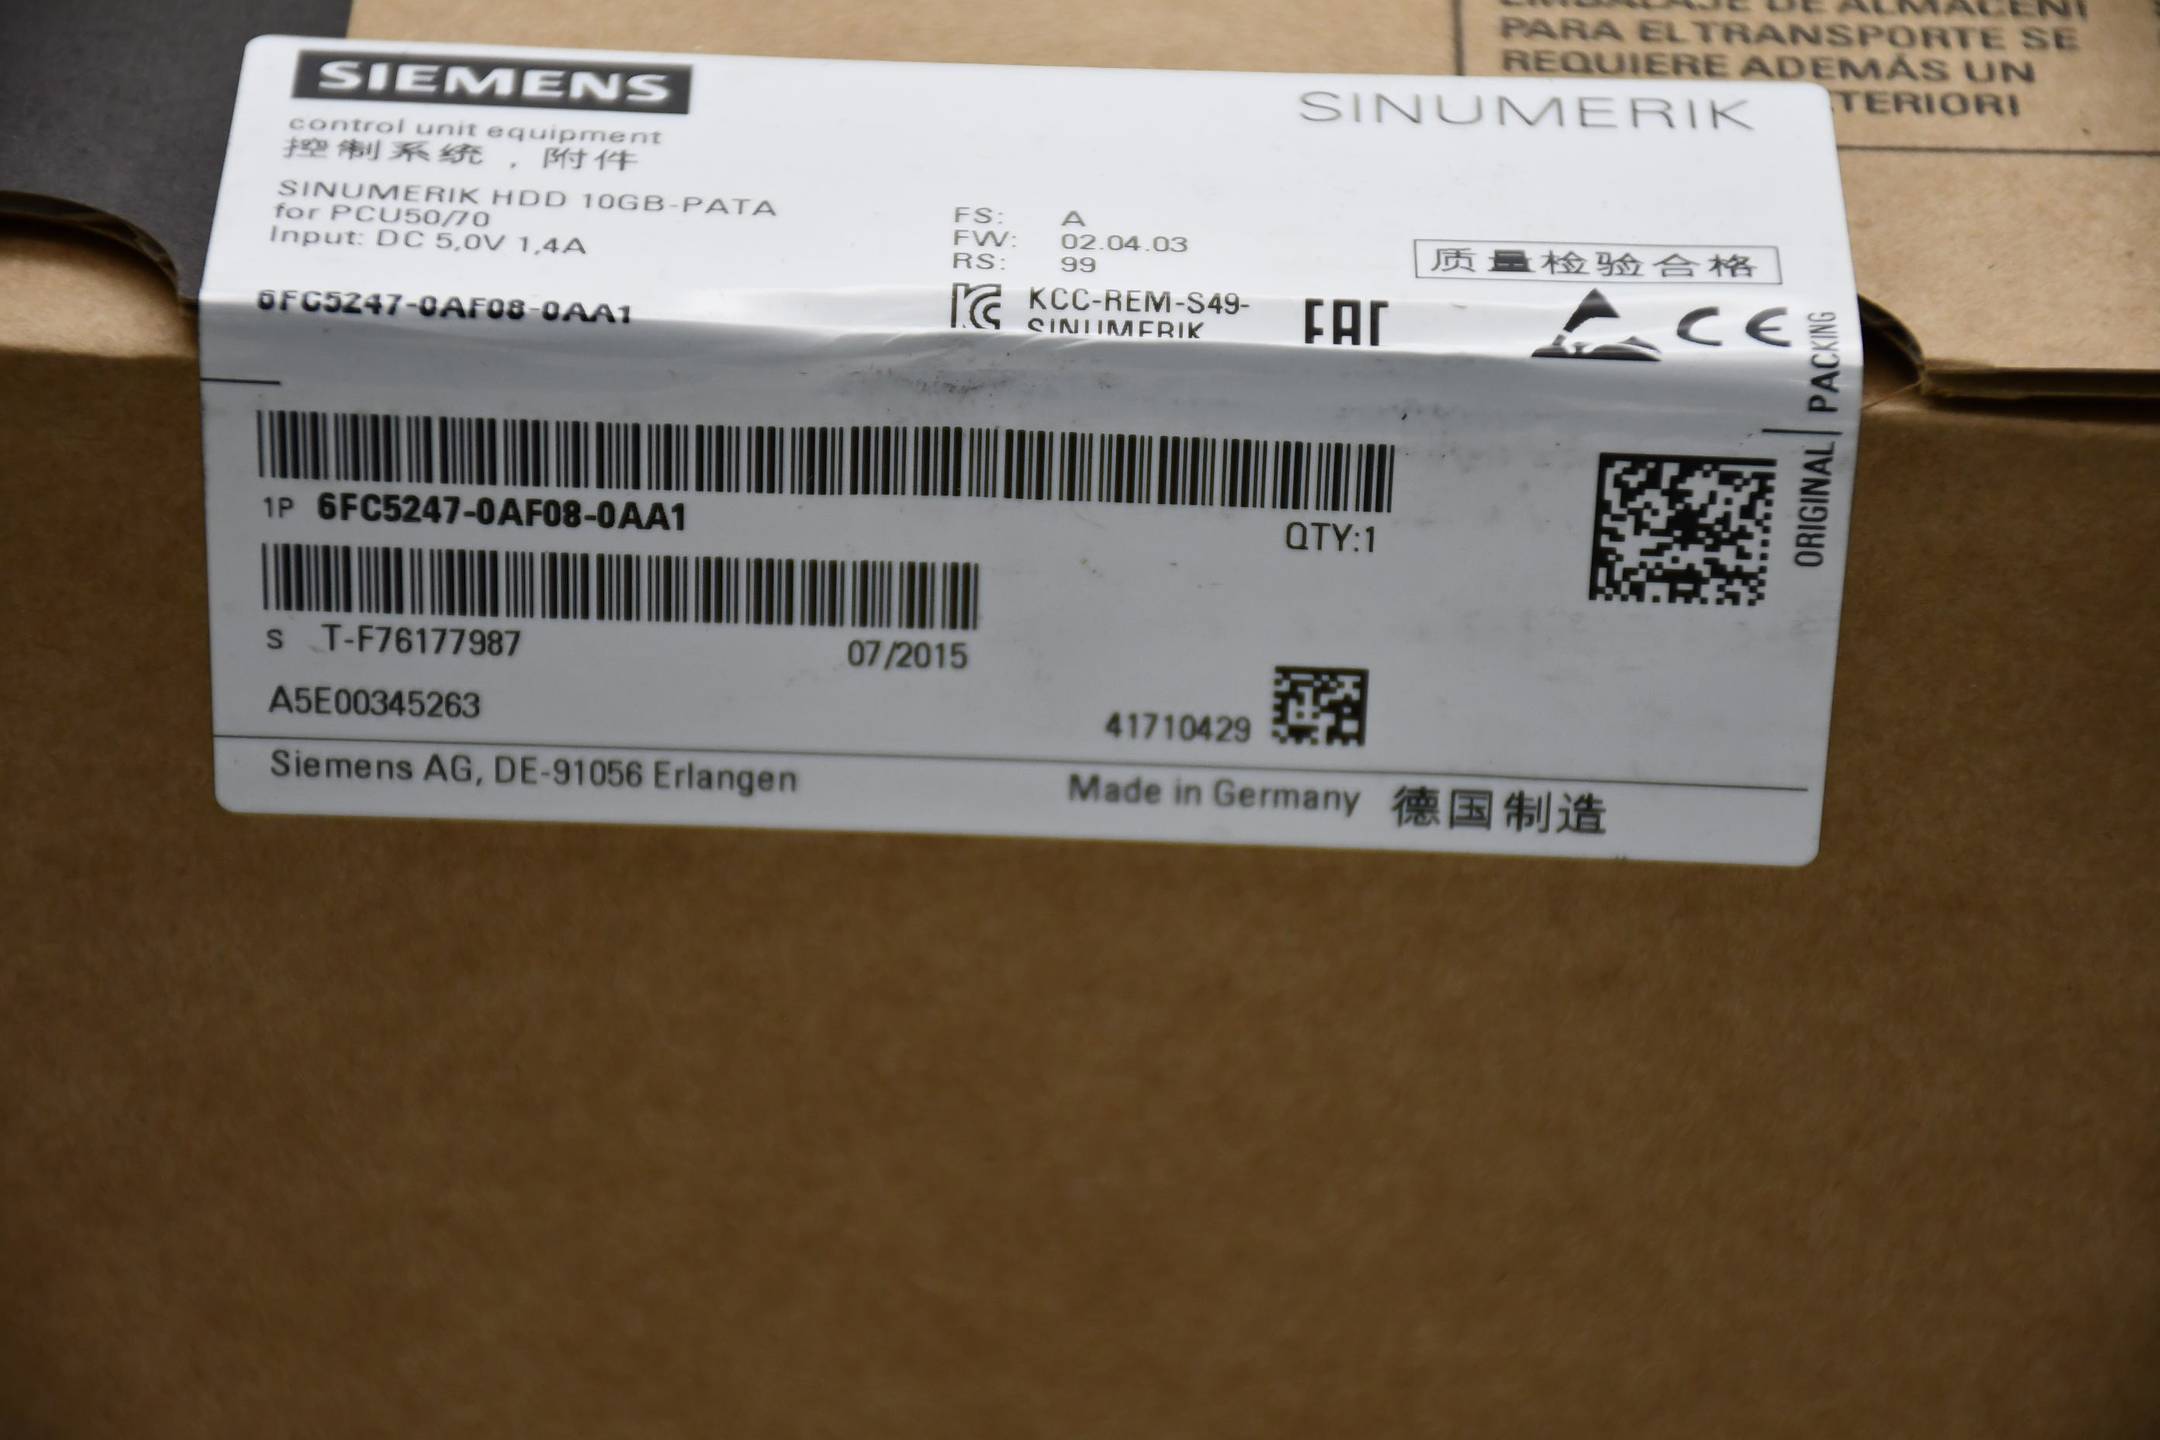 Siemens sinumerik HDD 10GB 6FC5247-0AF08-0AA1 ( 6FC5 247-0AF08-0AA1 ) FS: A